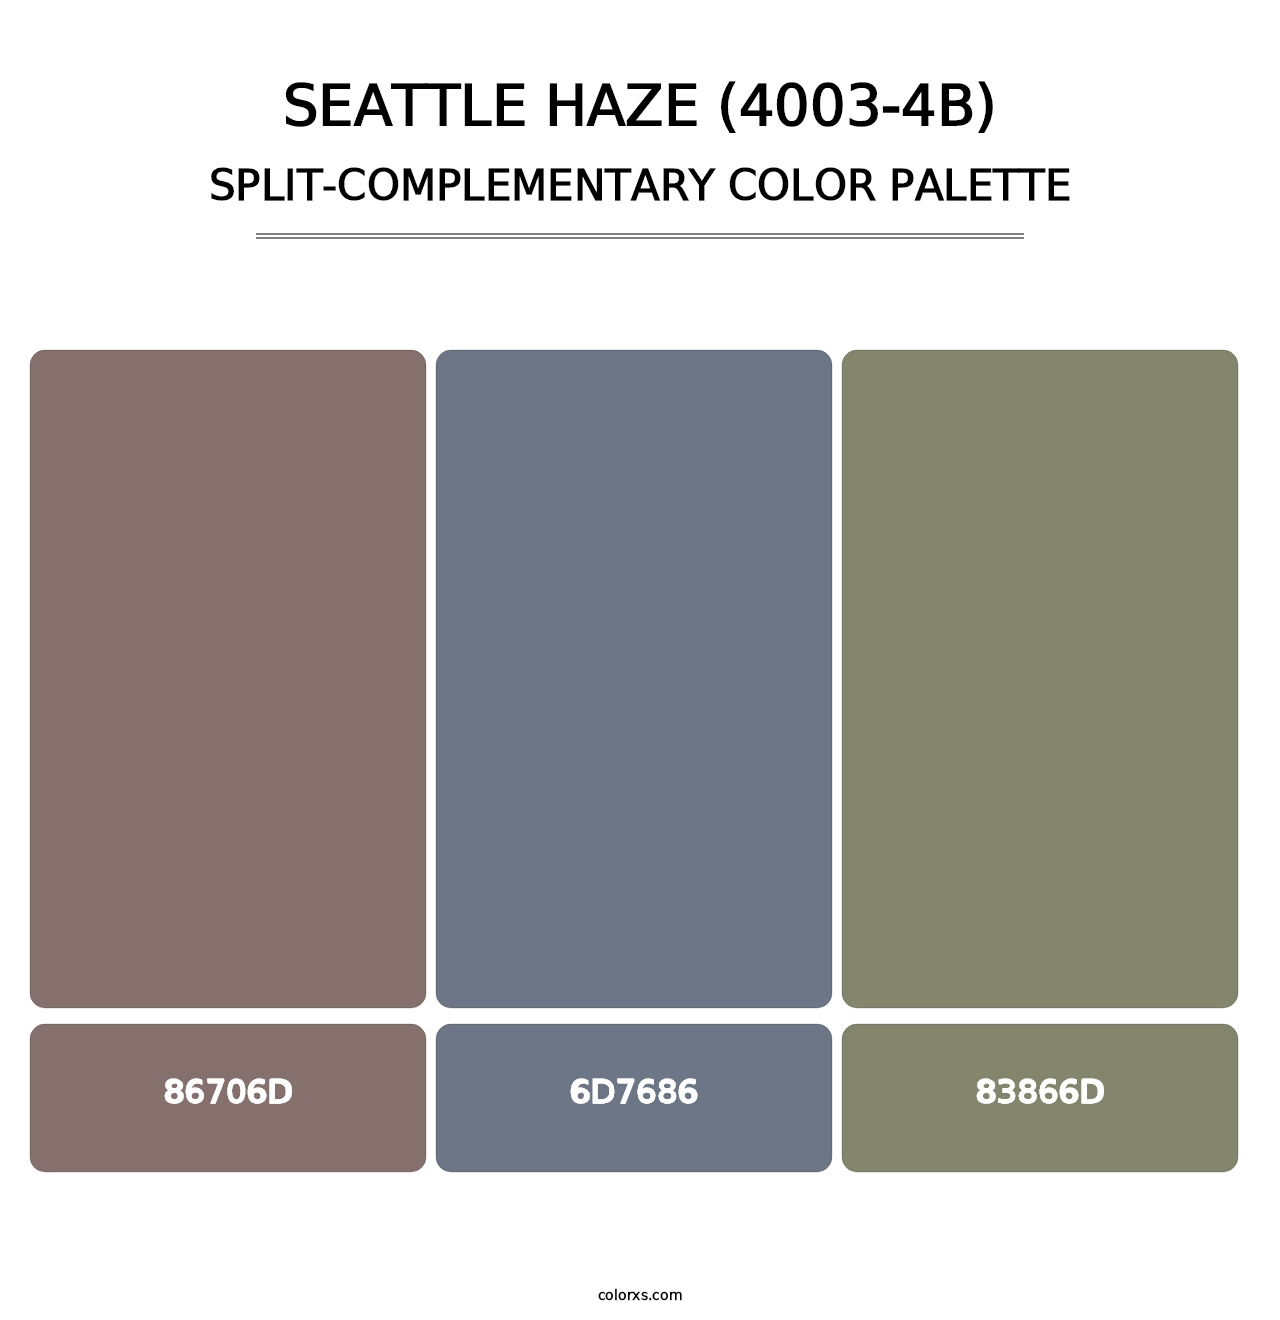 Seattle Haze (4003-4B) - Split-Complementary Color Palette